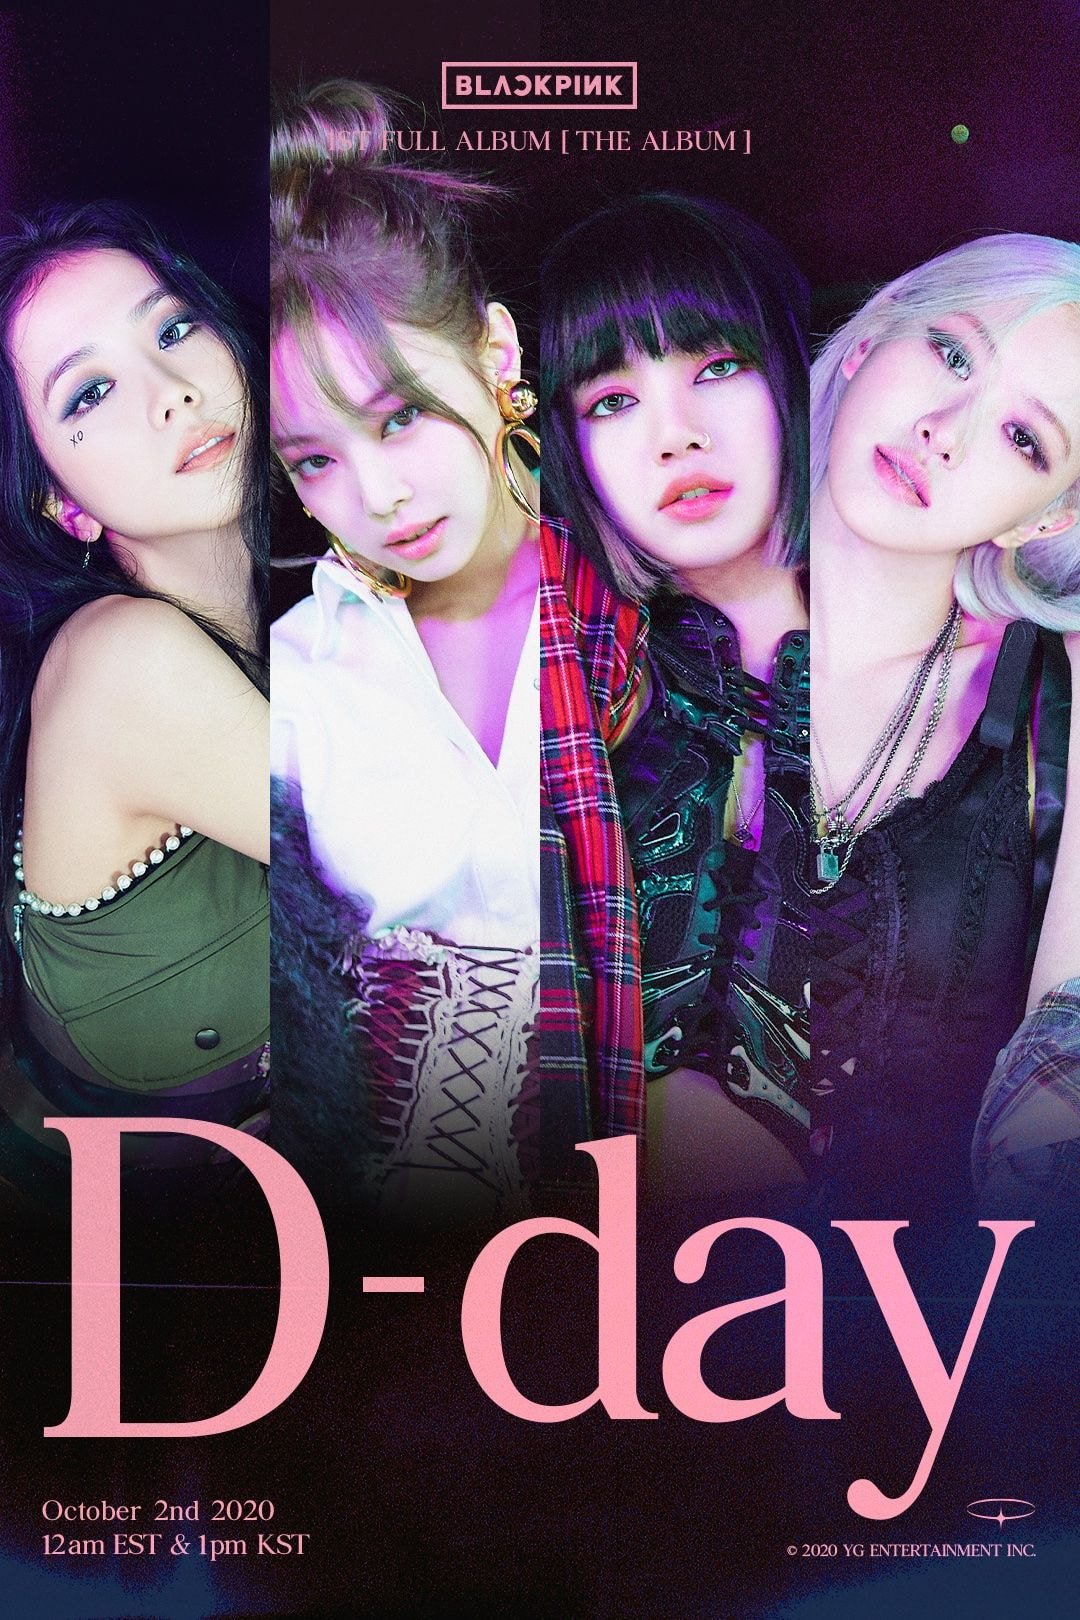 블랙핑크 정규 1집 “THE ALBUM” D-DAY 포스터